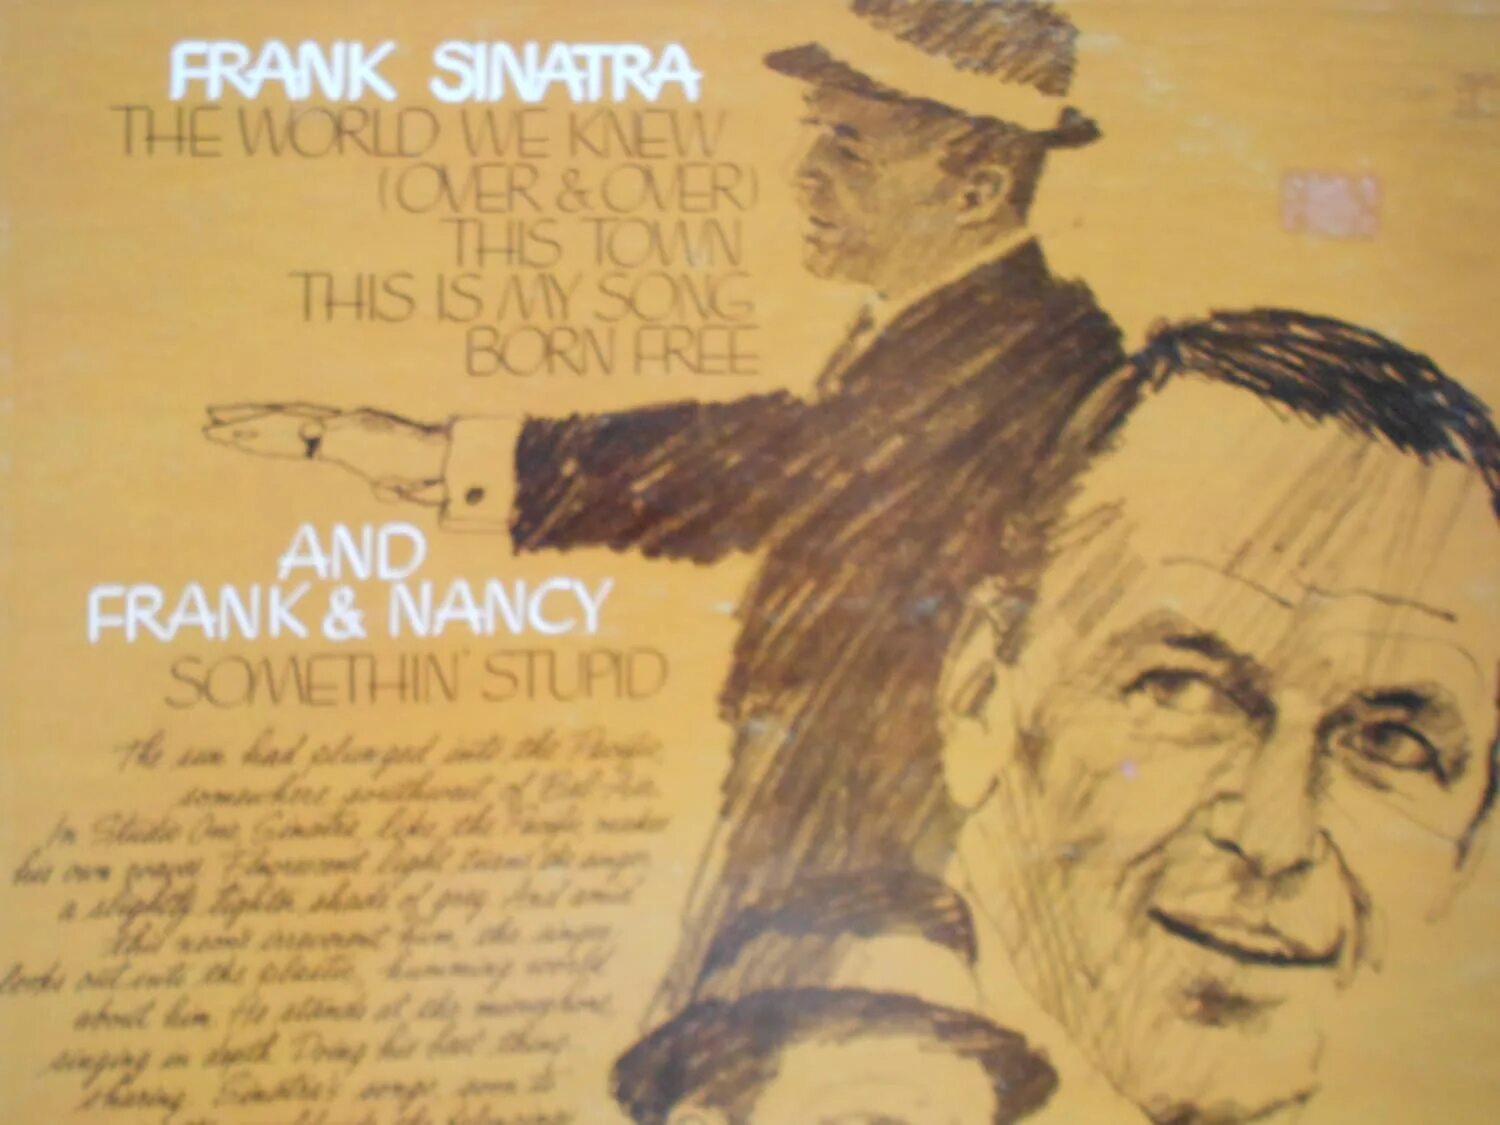 Sinatra the world we. Frank Sinatra - the World we knew. Frank Sinatra the World we knew пластинка. The World we knew Frank Sinatra обложка. Frank Sinatra - the World we knew (1967) Ноты.